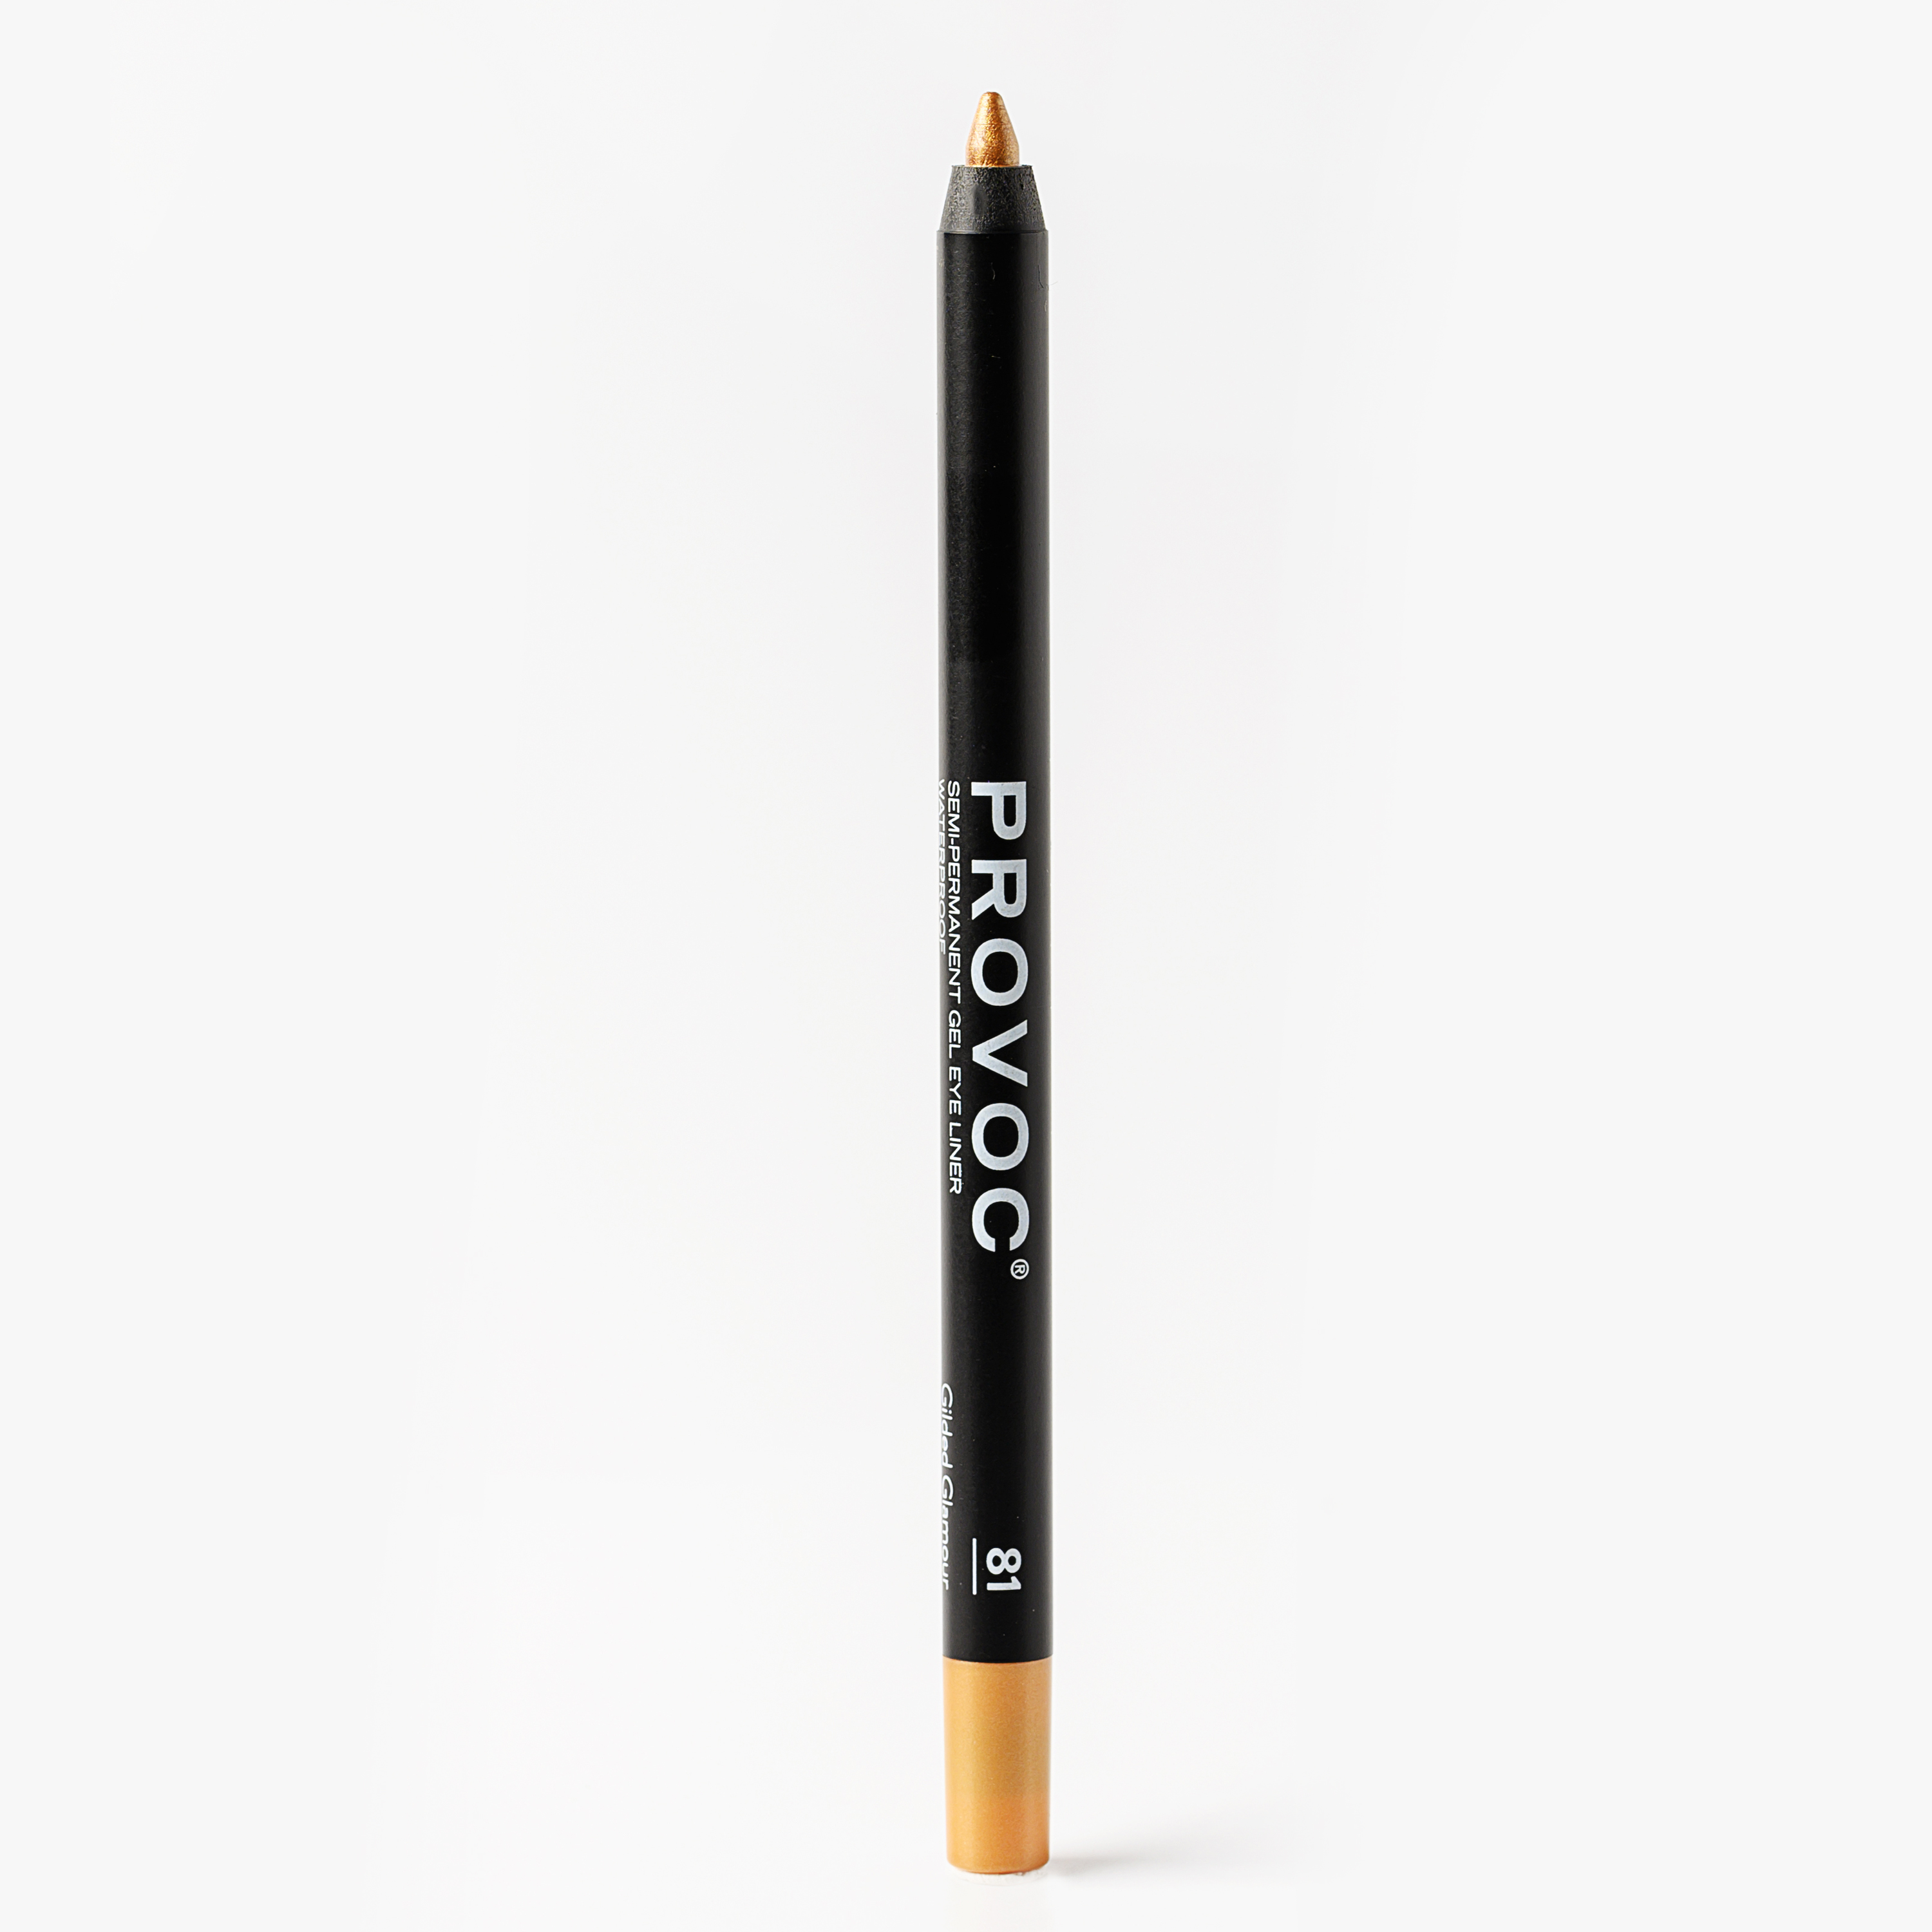 Гелевый карандаш для глаз Provoc Gel Eye Liner 81 Gilded Glamour (золотистый) 1,2 г карандаш для век гелевый deborah milano тон 11 1 4 г 2 шт